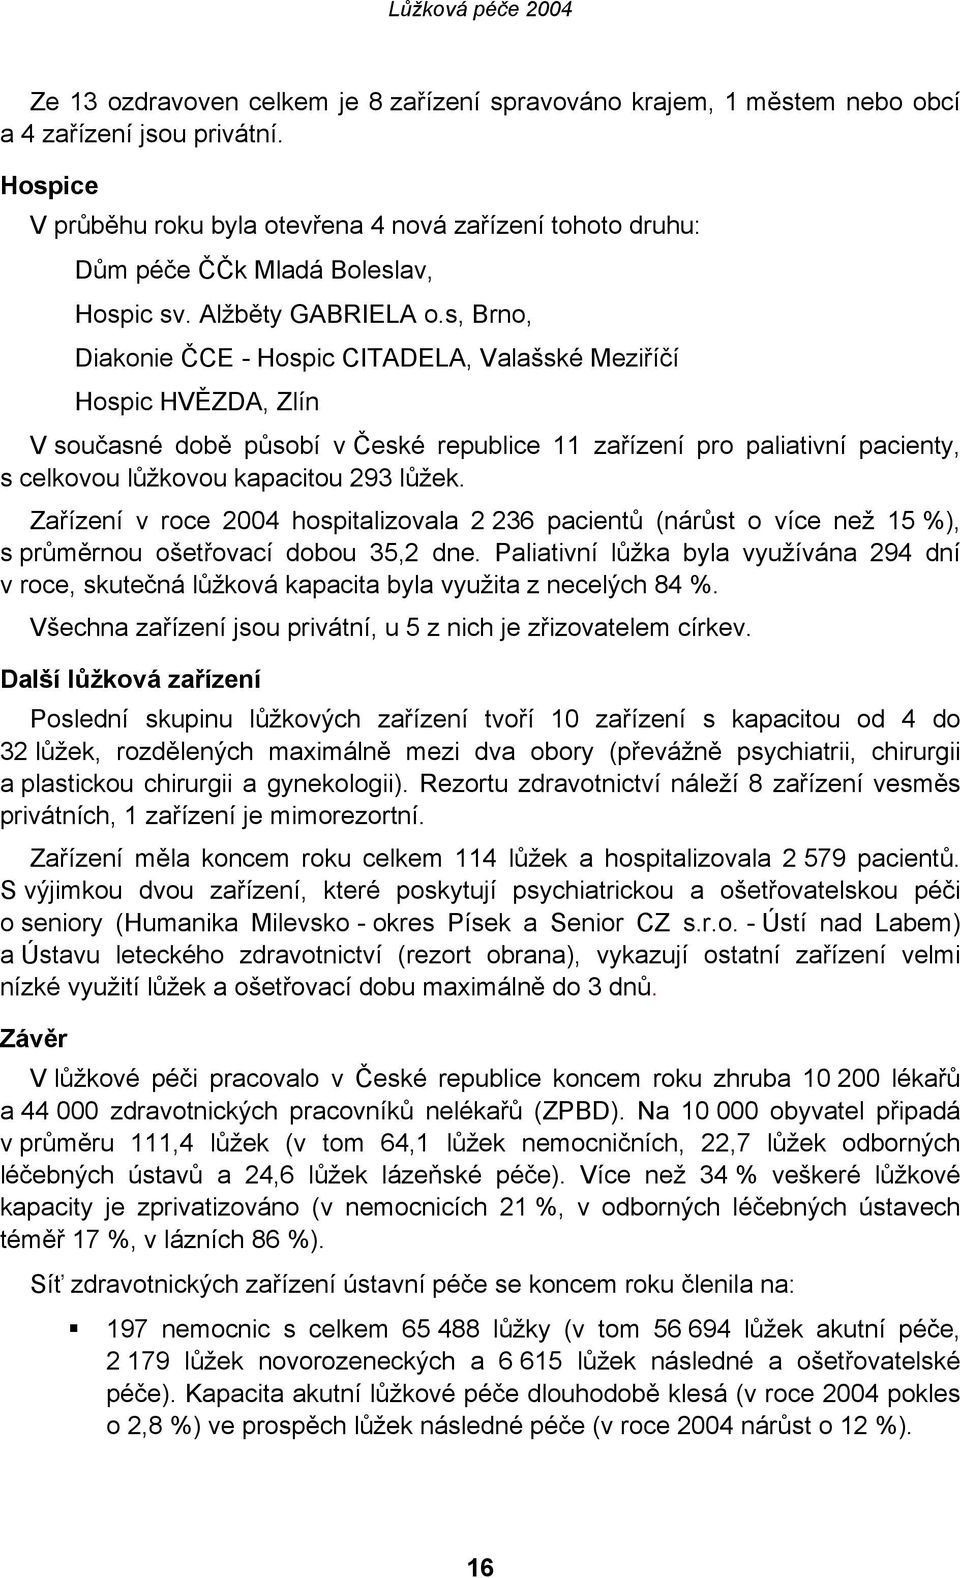 s, Brno, Diakonie ČCE - Hospic CITADELA, Valašské Meziříčí Hospic HVĚZDA, Zlín V současné době působí v České republice 11 zařízení pro paliativní pacienty, s celkovou lůžkovou kapacitou 293 lůžek.